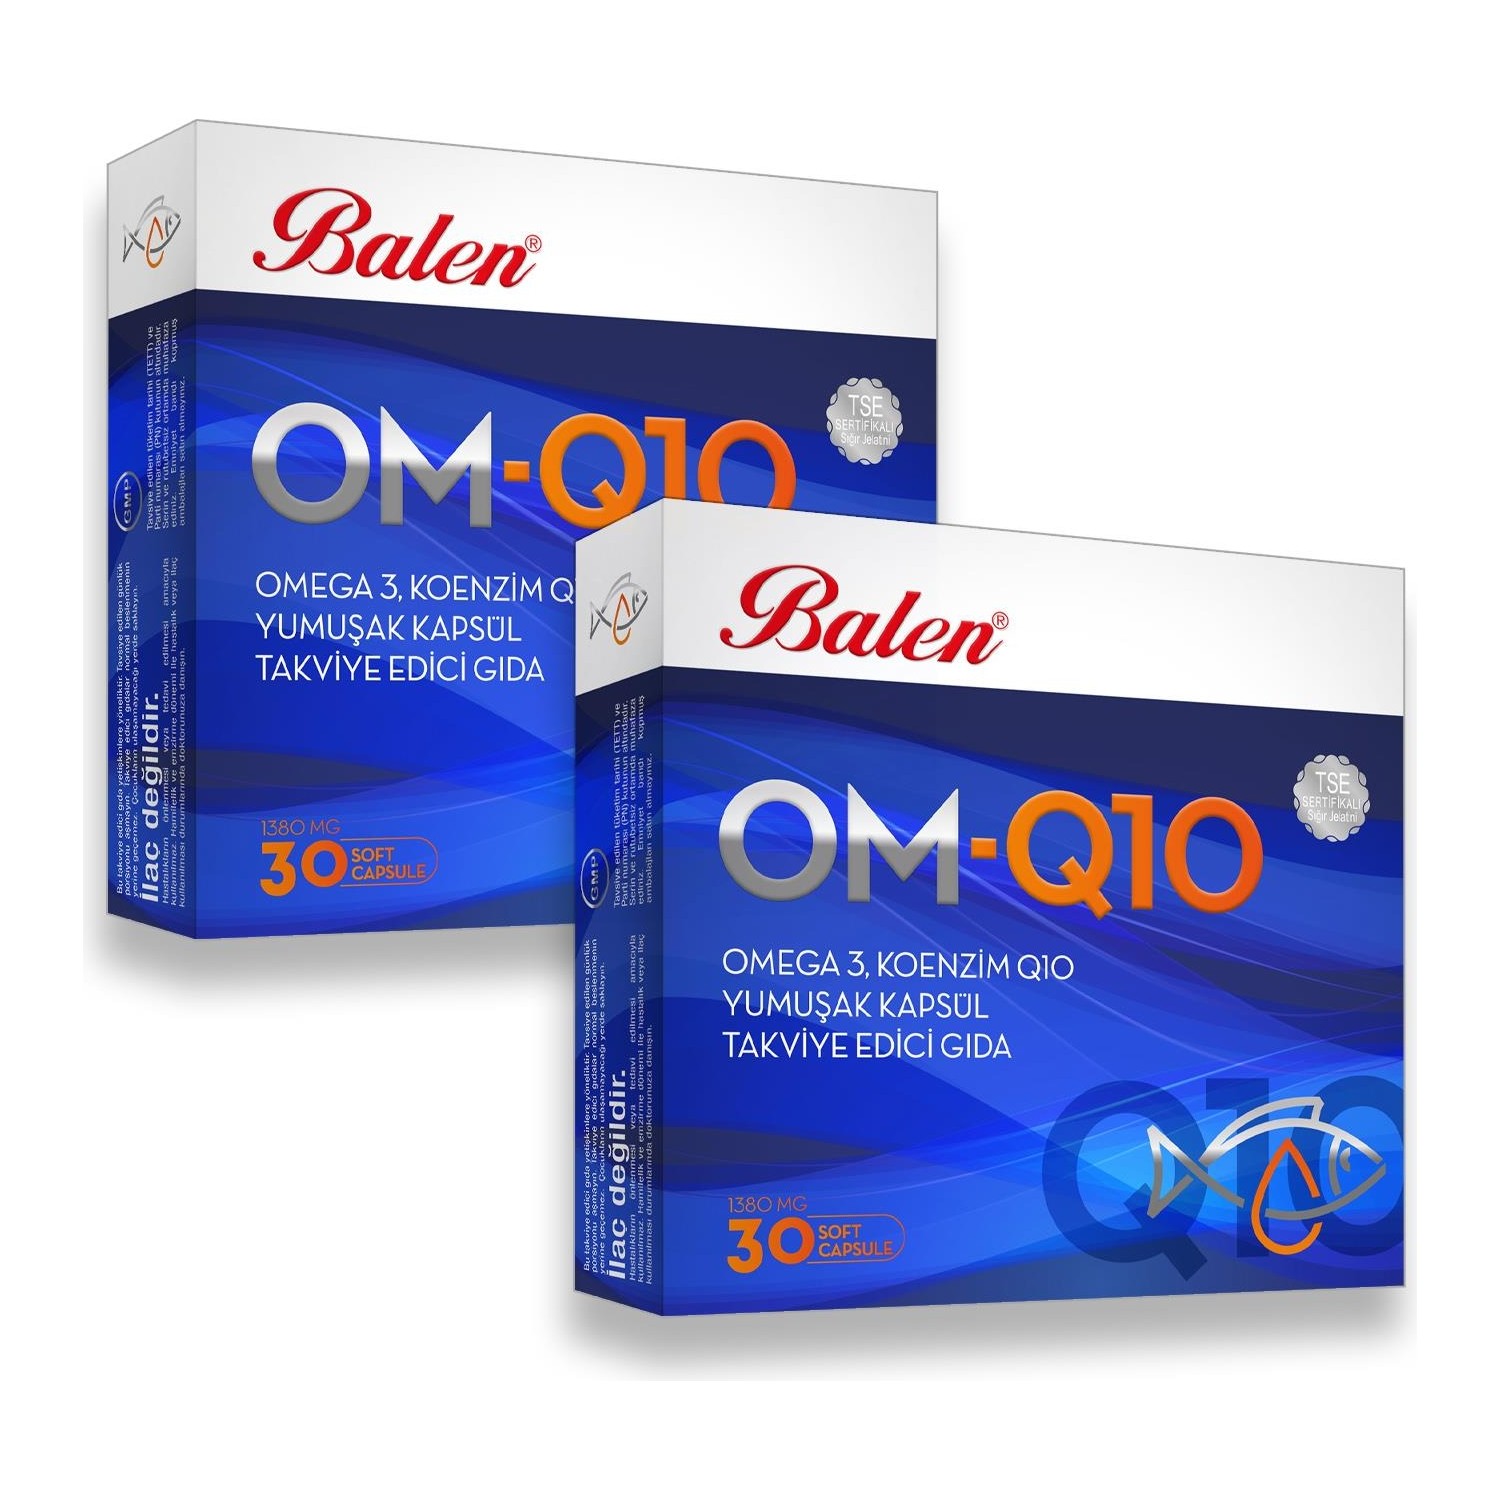 цена Рыбий жир Balen OM-Q10 Omega-3, 2 упаковки по 30 мягких капсул